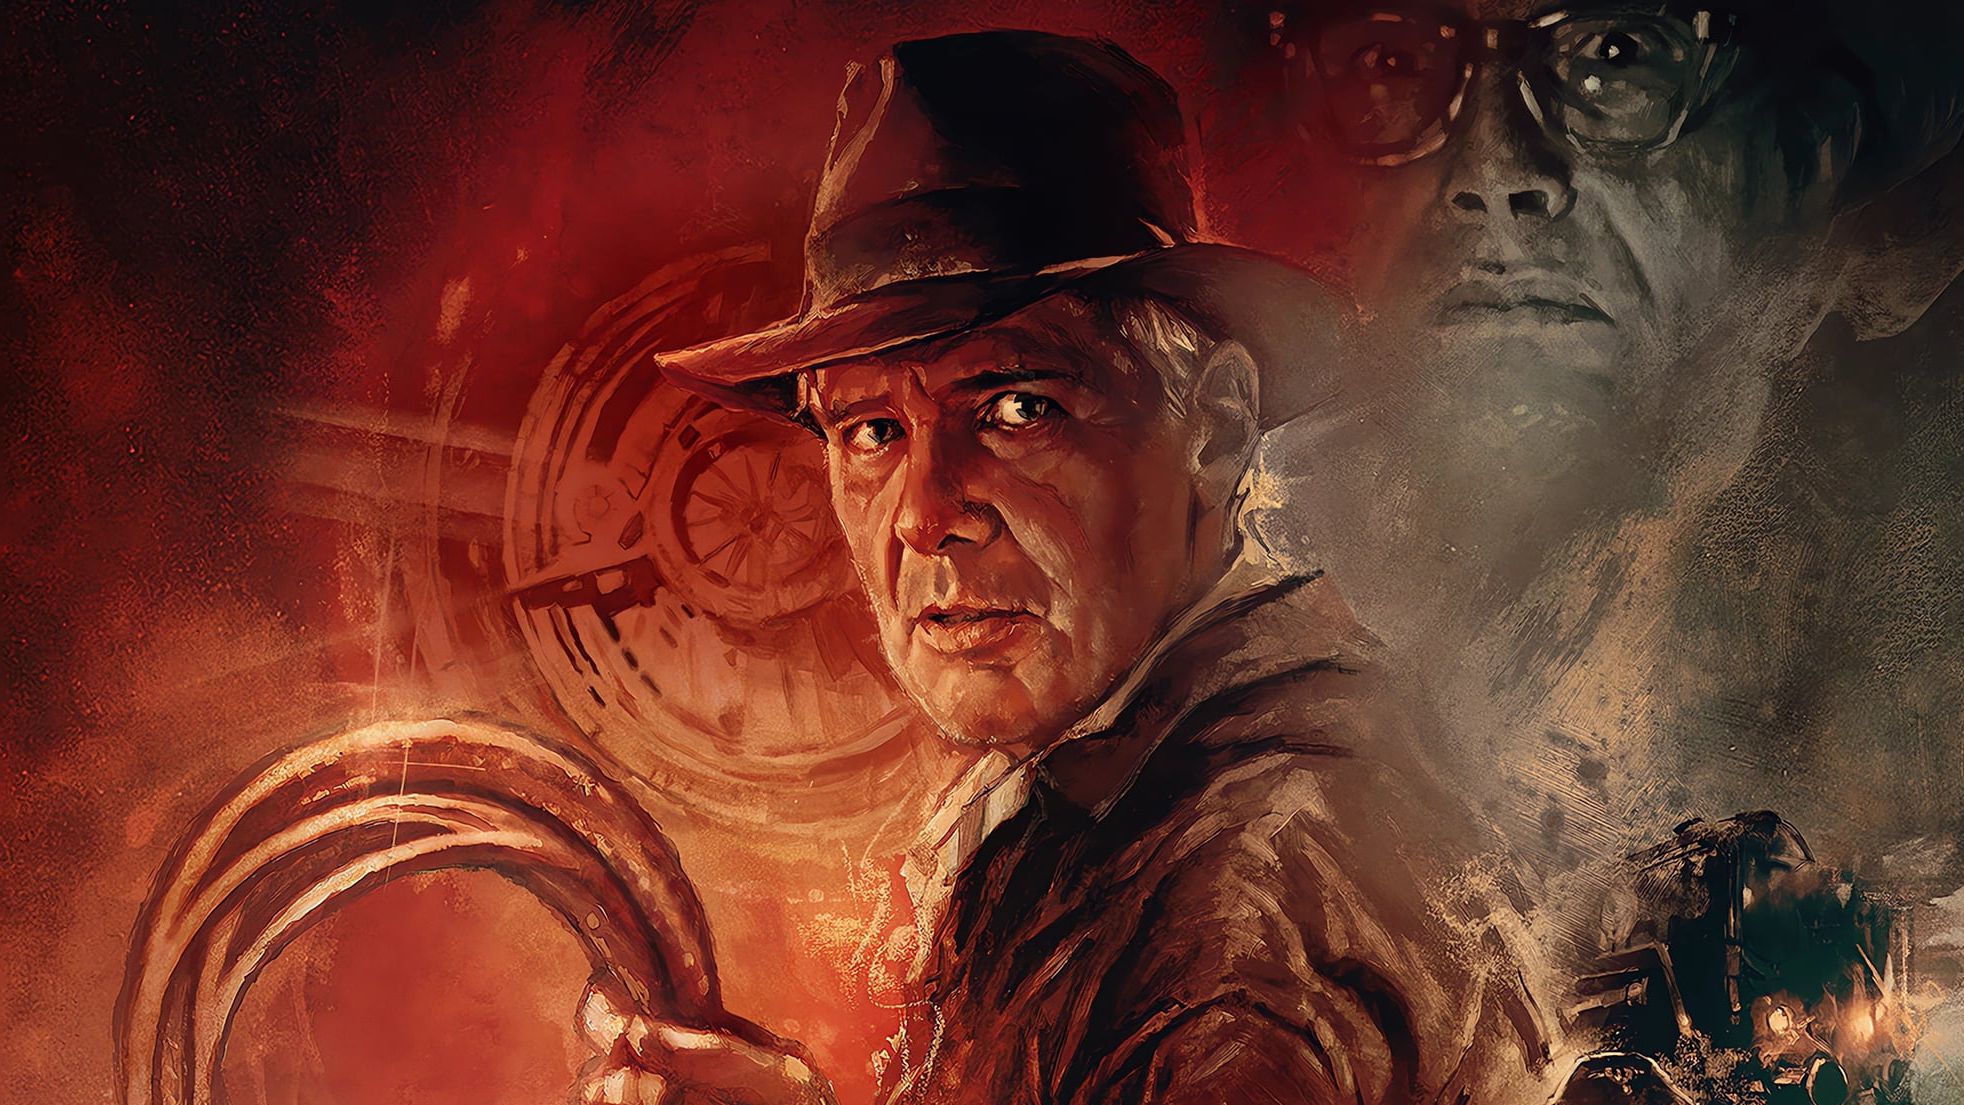 Indiana Jones e a Relíquia do Destino filme